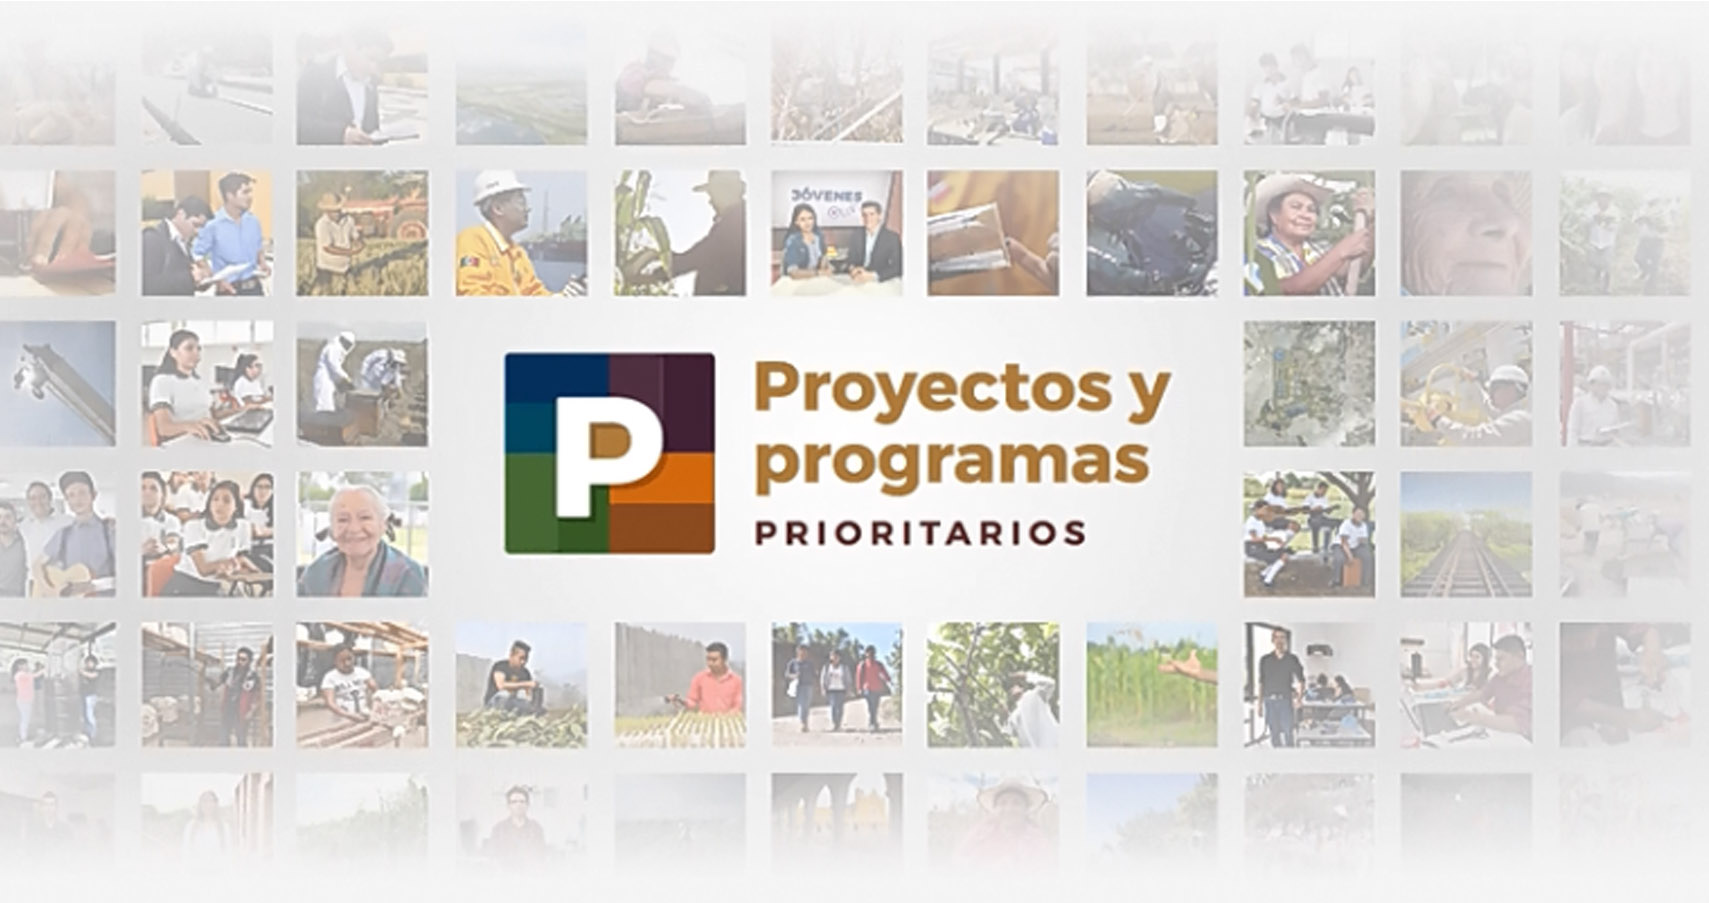 El Gobierno de México ha creado nuevos proyectos y programas para llevar el bienestar a todas las regiones del país.